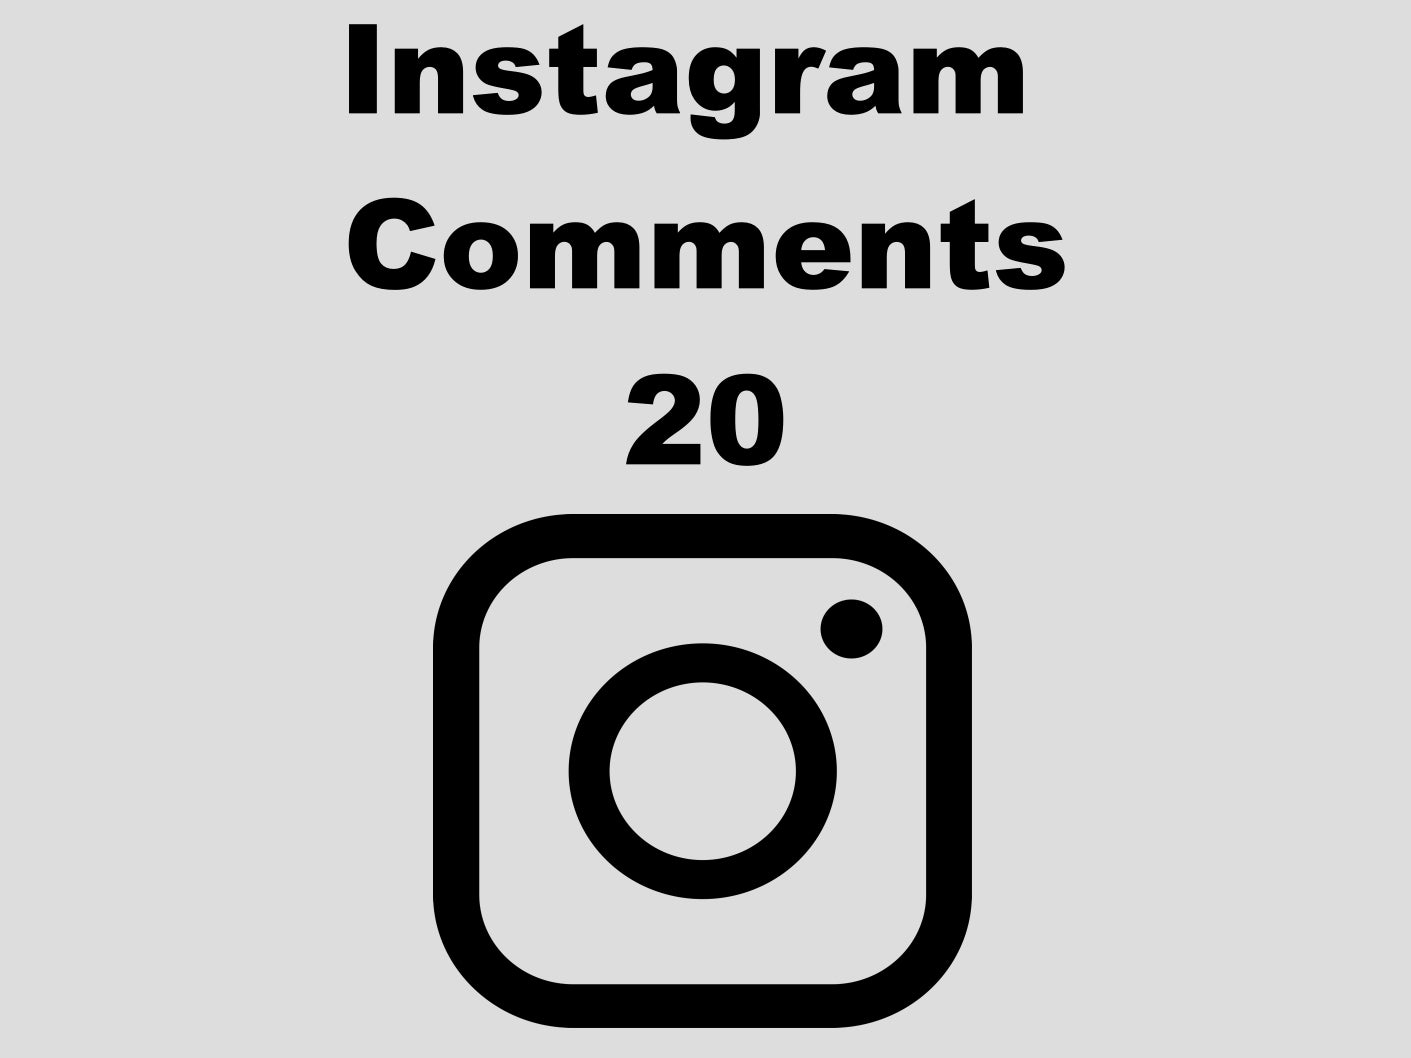 echte Instagram Comments günstig kaufen 20 Kommentare